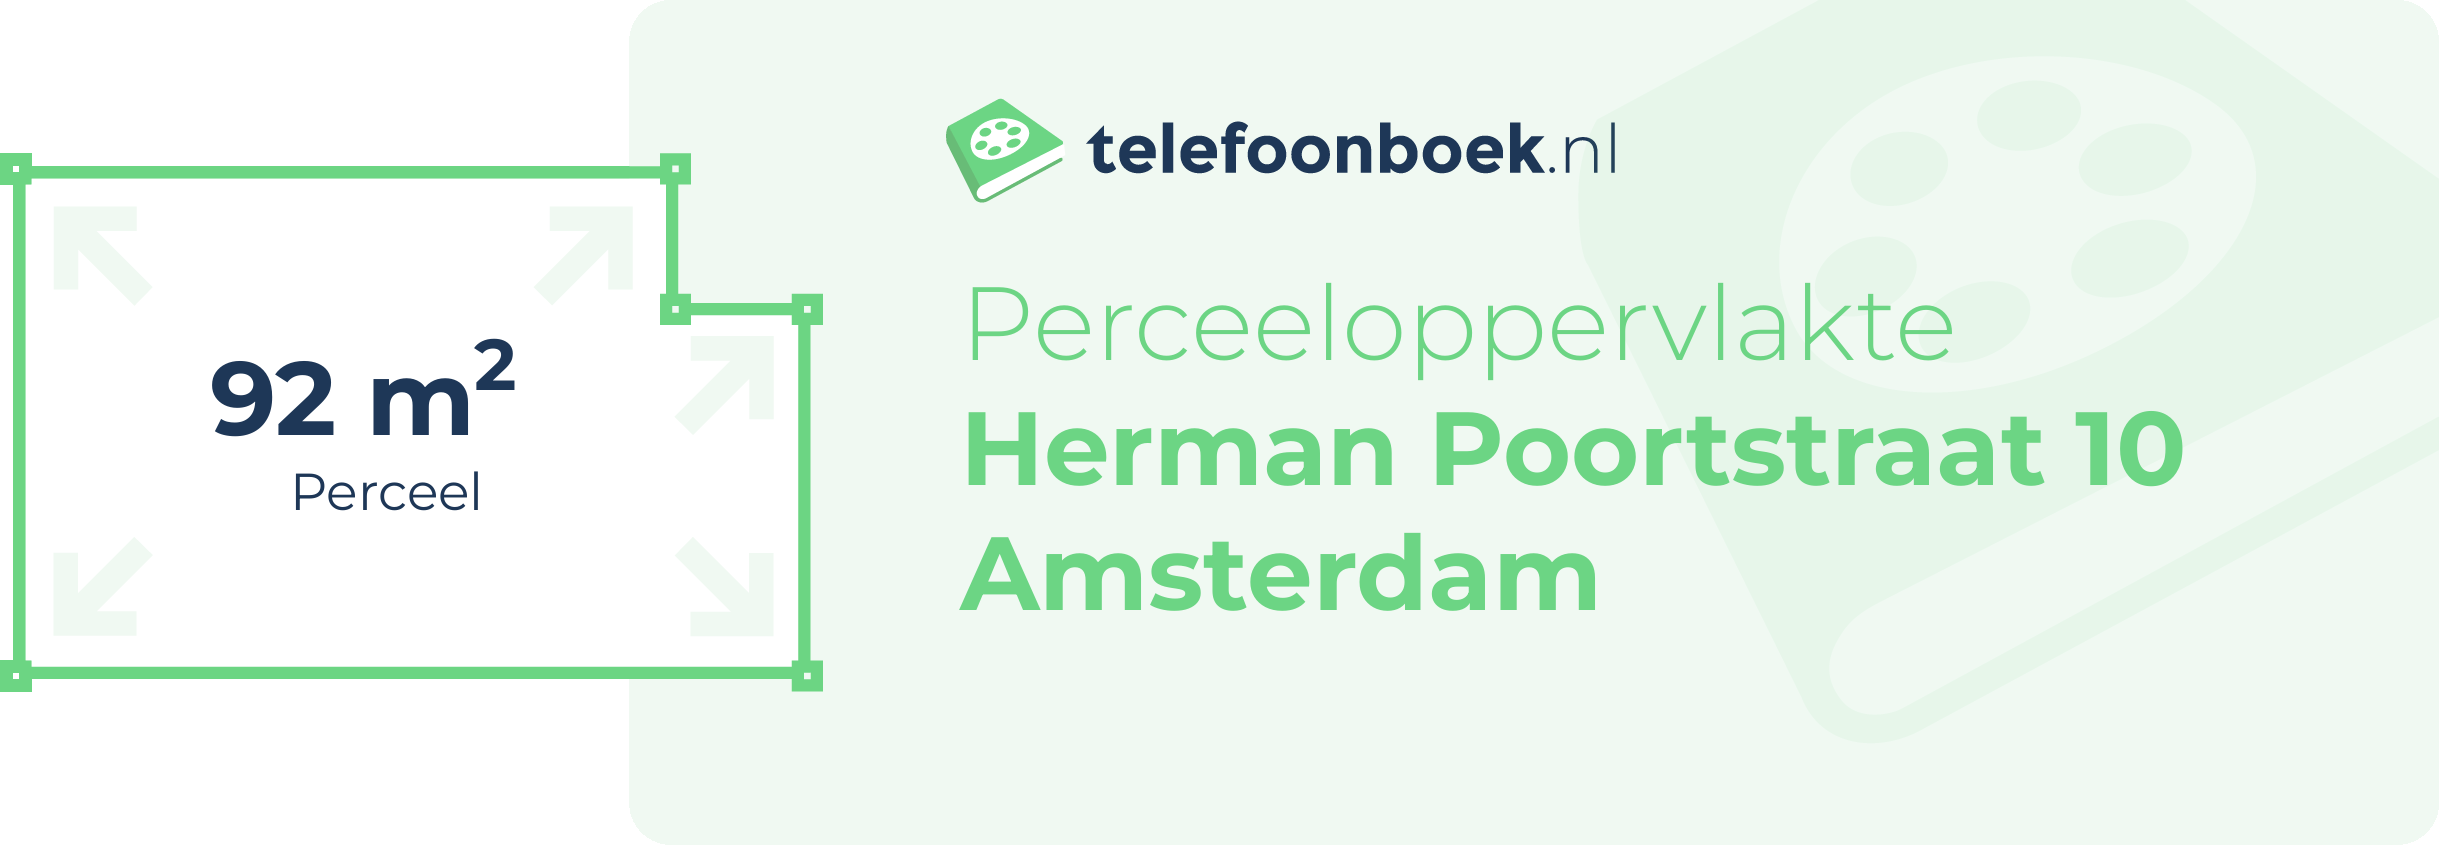 Perceeloppervlakte Herman Poortstraat 10 Amsterdam